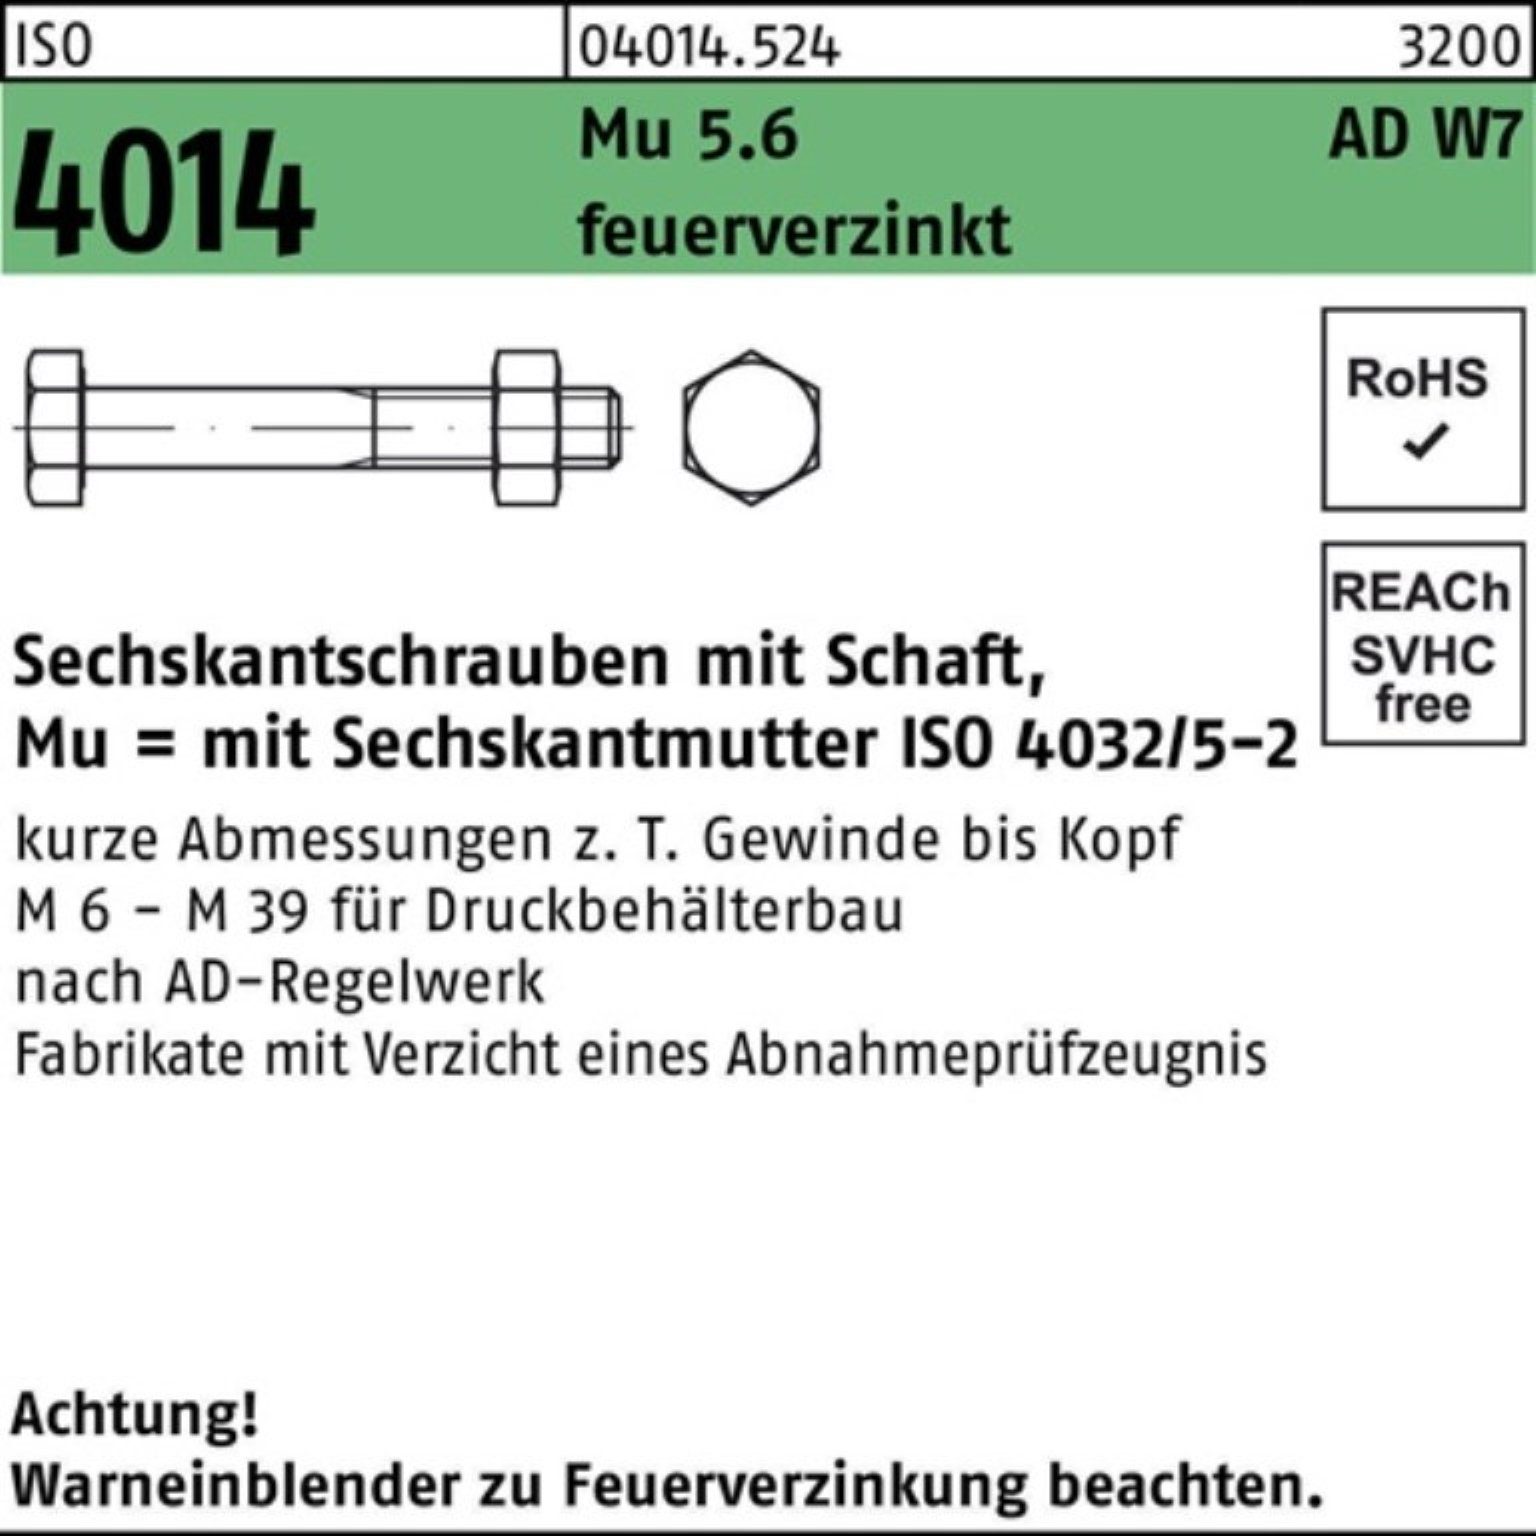 4014 100er feuerve Bufab 5.6 Mu Sechskantschraube Schaft Sechskantschraube Pack ISO M16x 85 W7